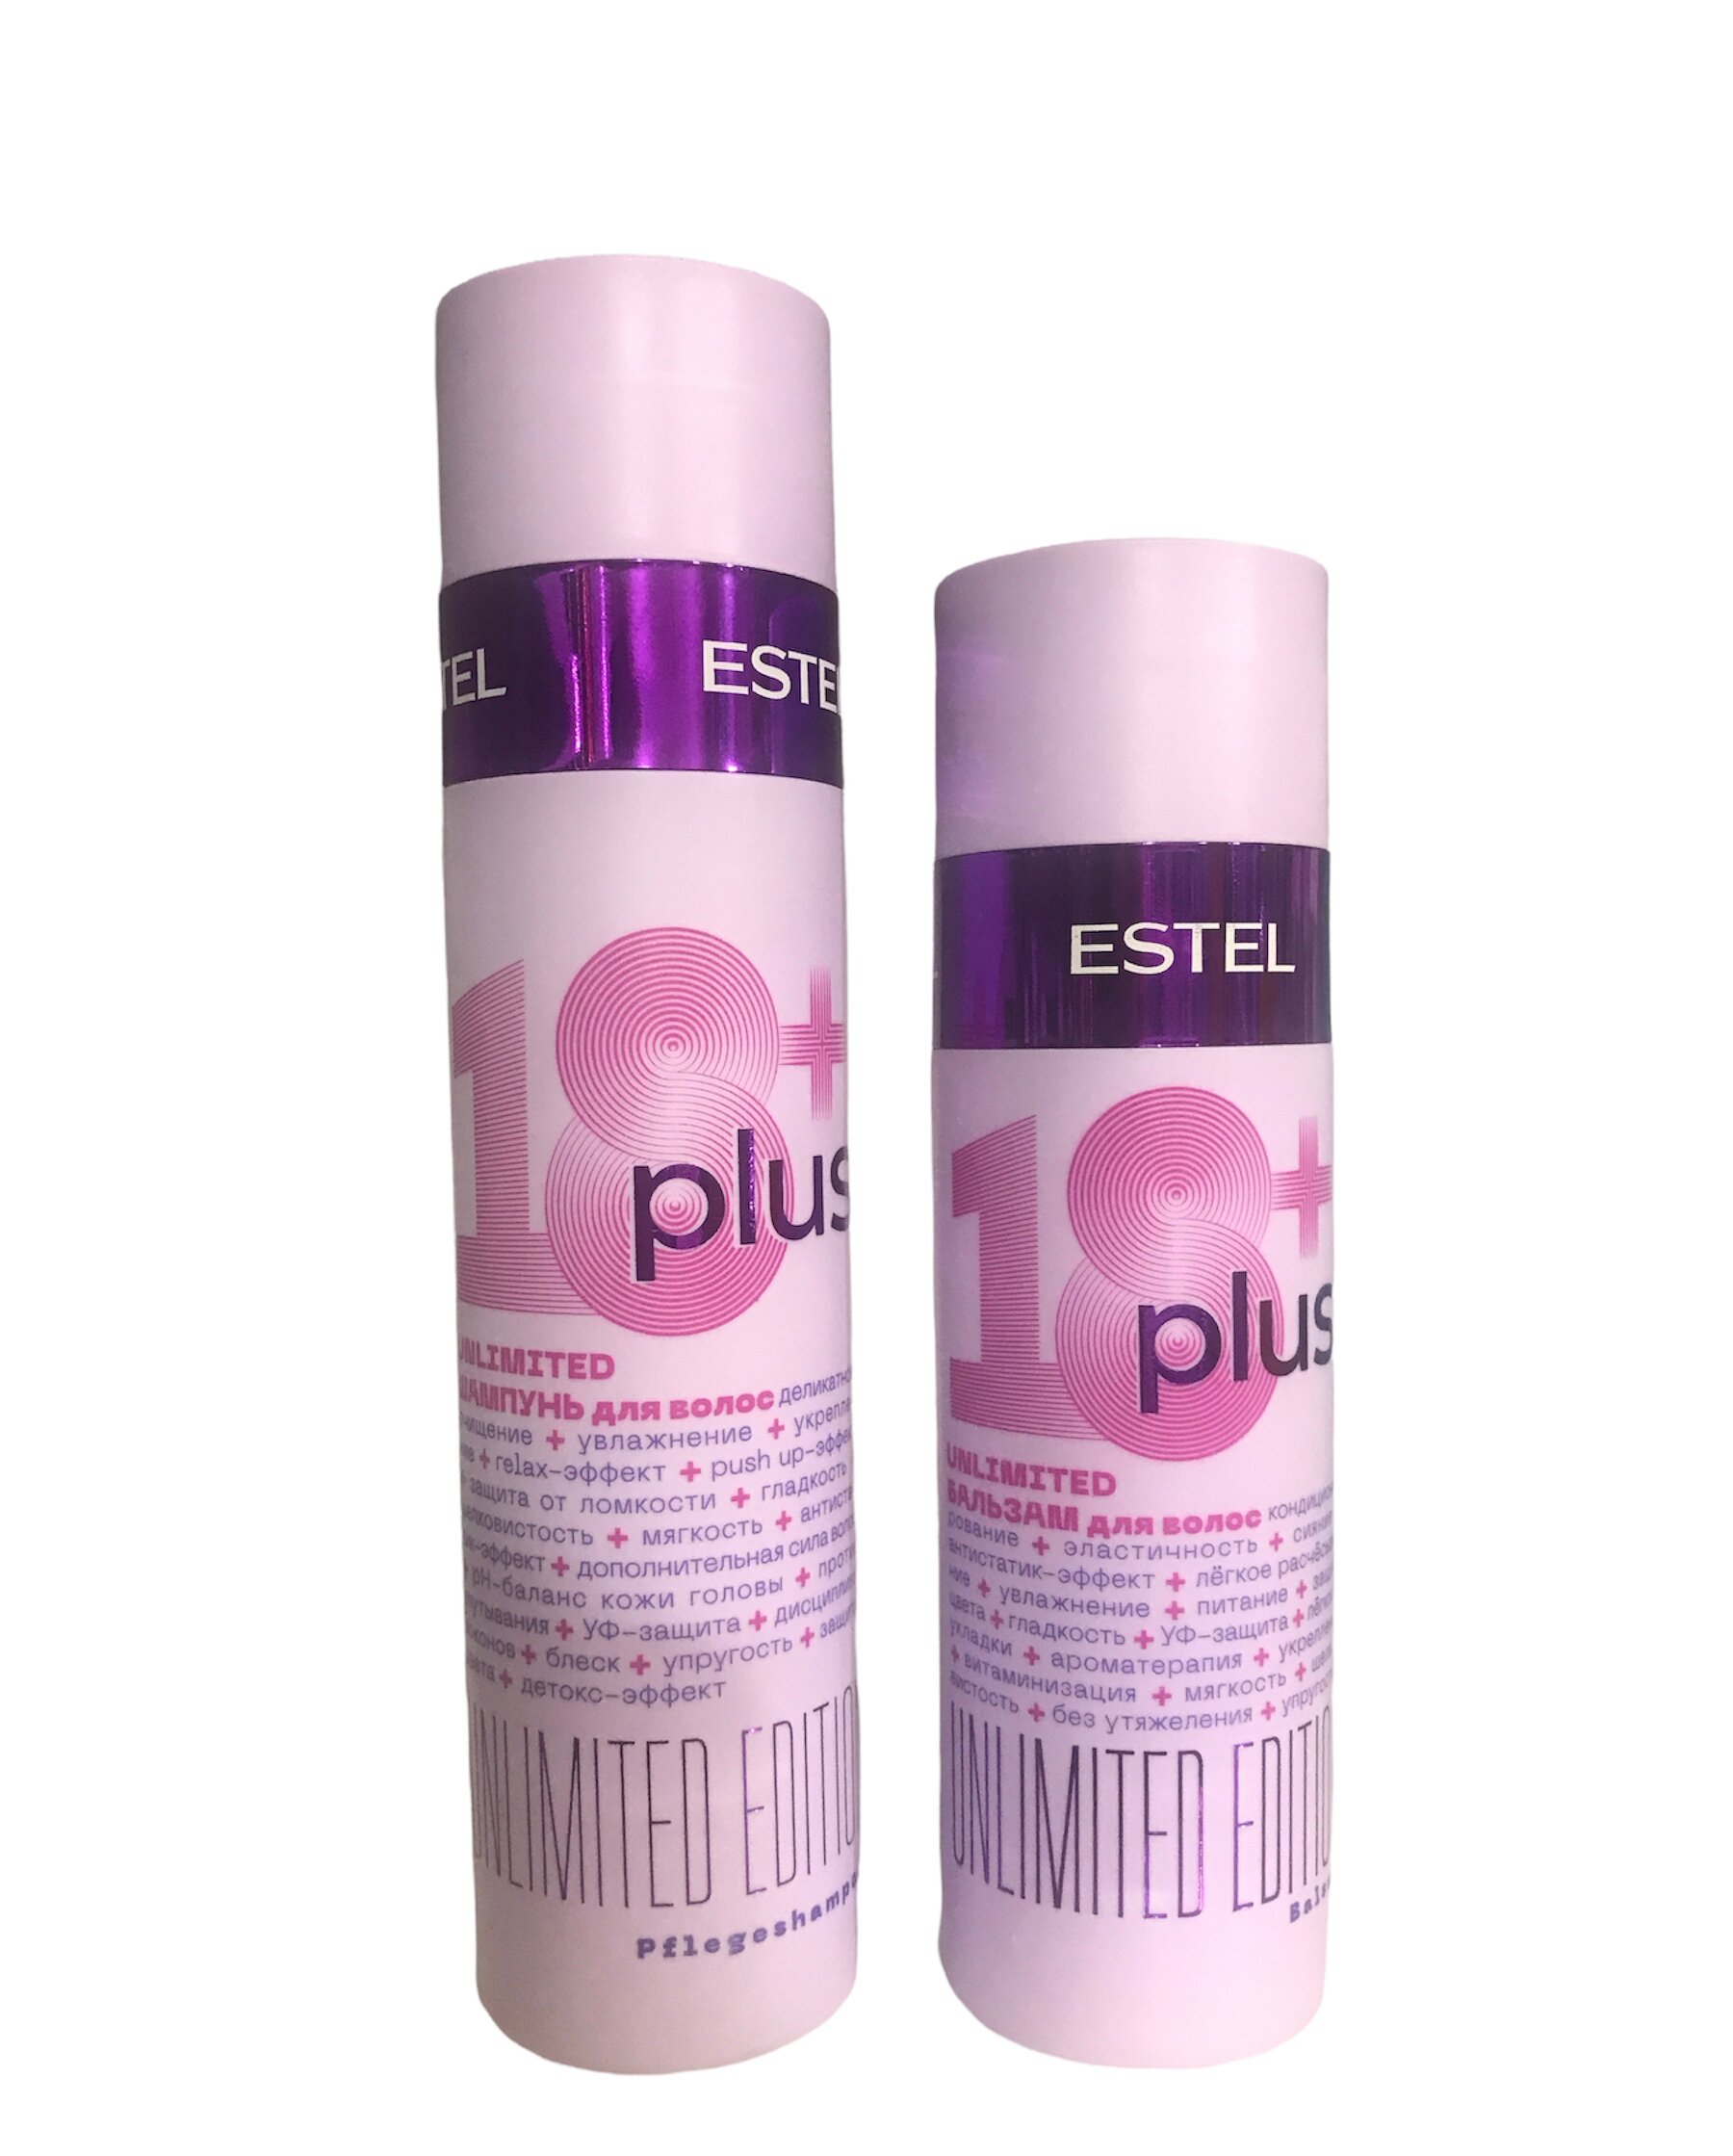 Набор ESTEL 18+ Plus набор для ухода за волосами шампунь 250 мл + бальзам 200 мл indigo style бальзам маска цитрусовая для ухода за окрашиваемыми осветленными волосами 1000